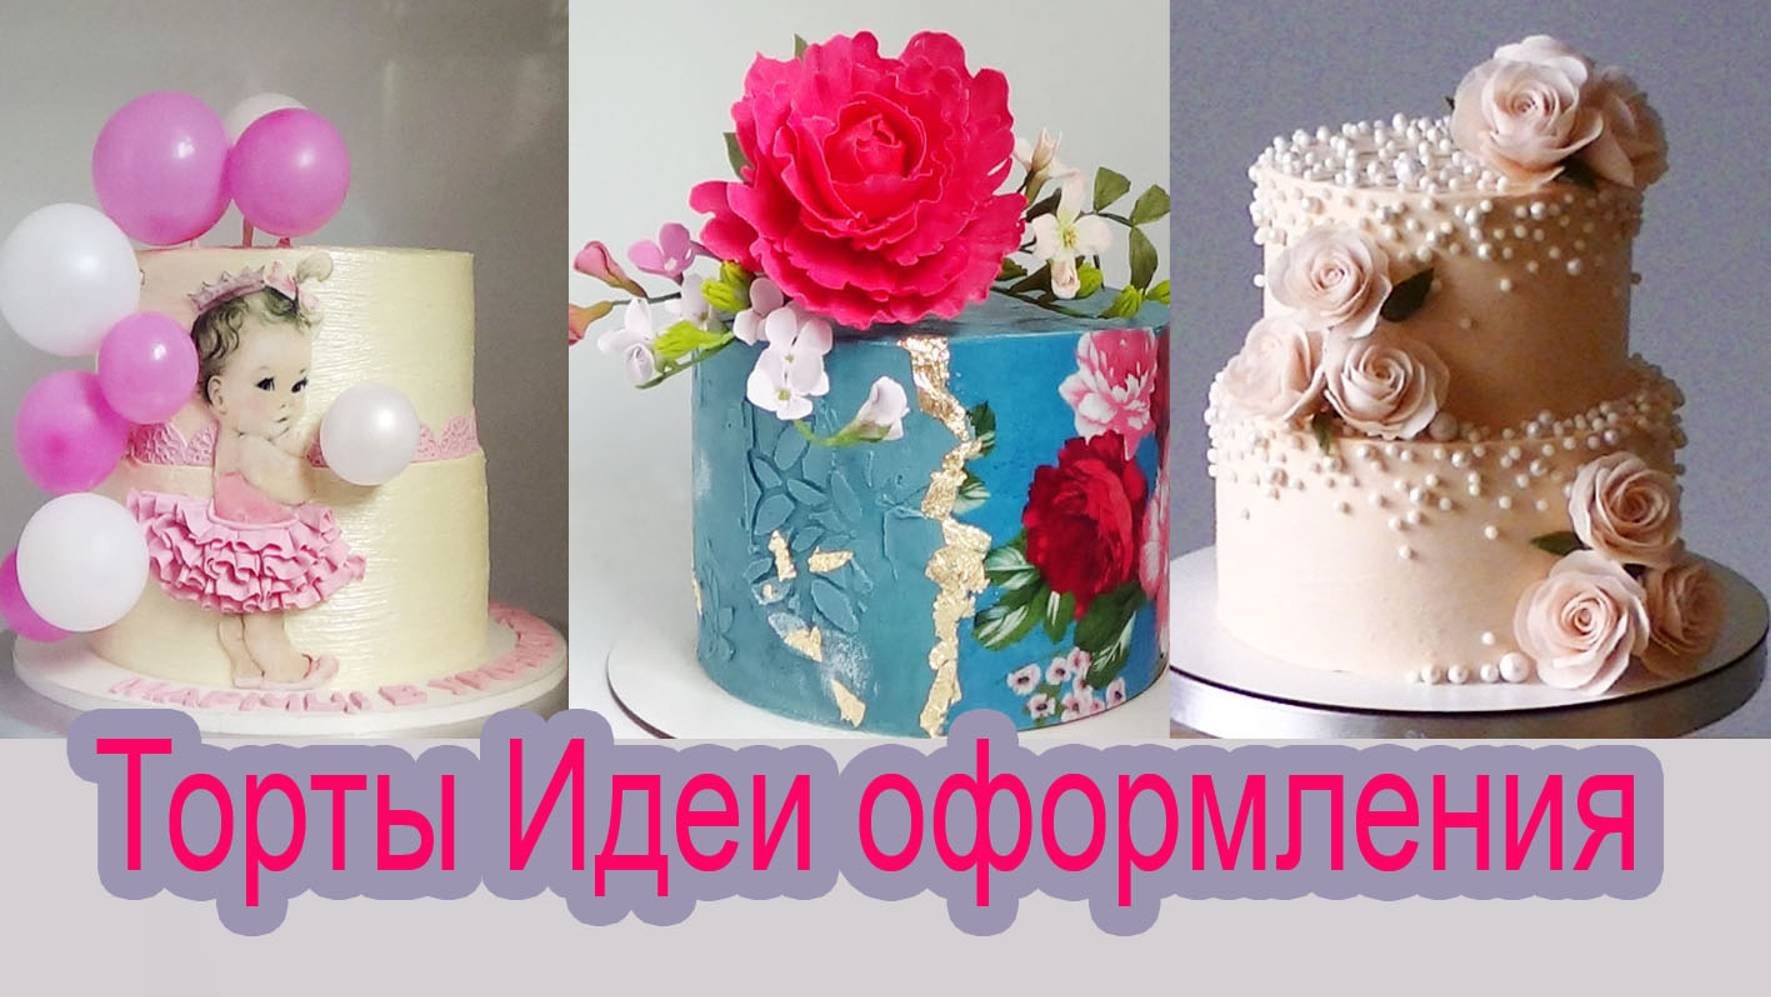 Торты Идеи оформления_ Amazing  Cake Decorating Compilation